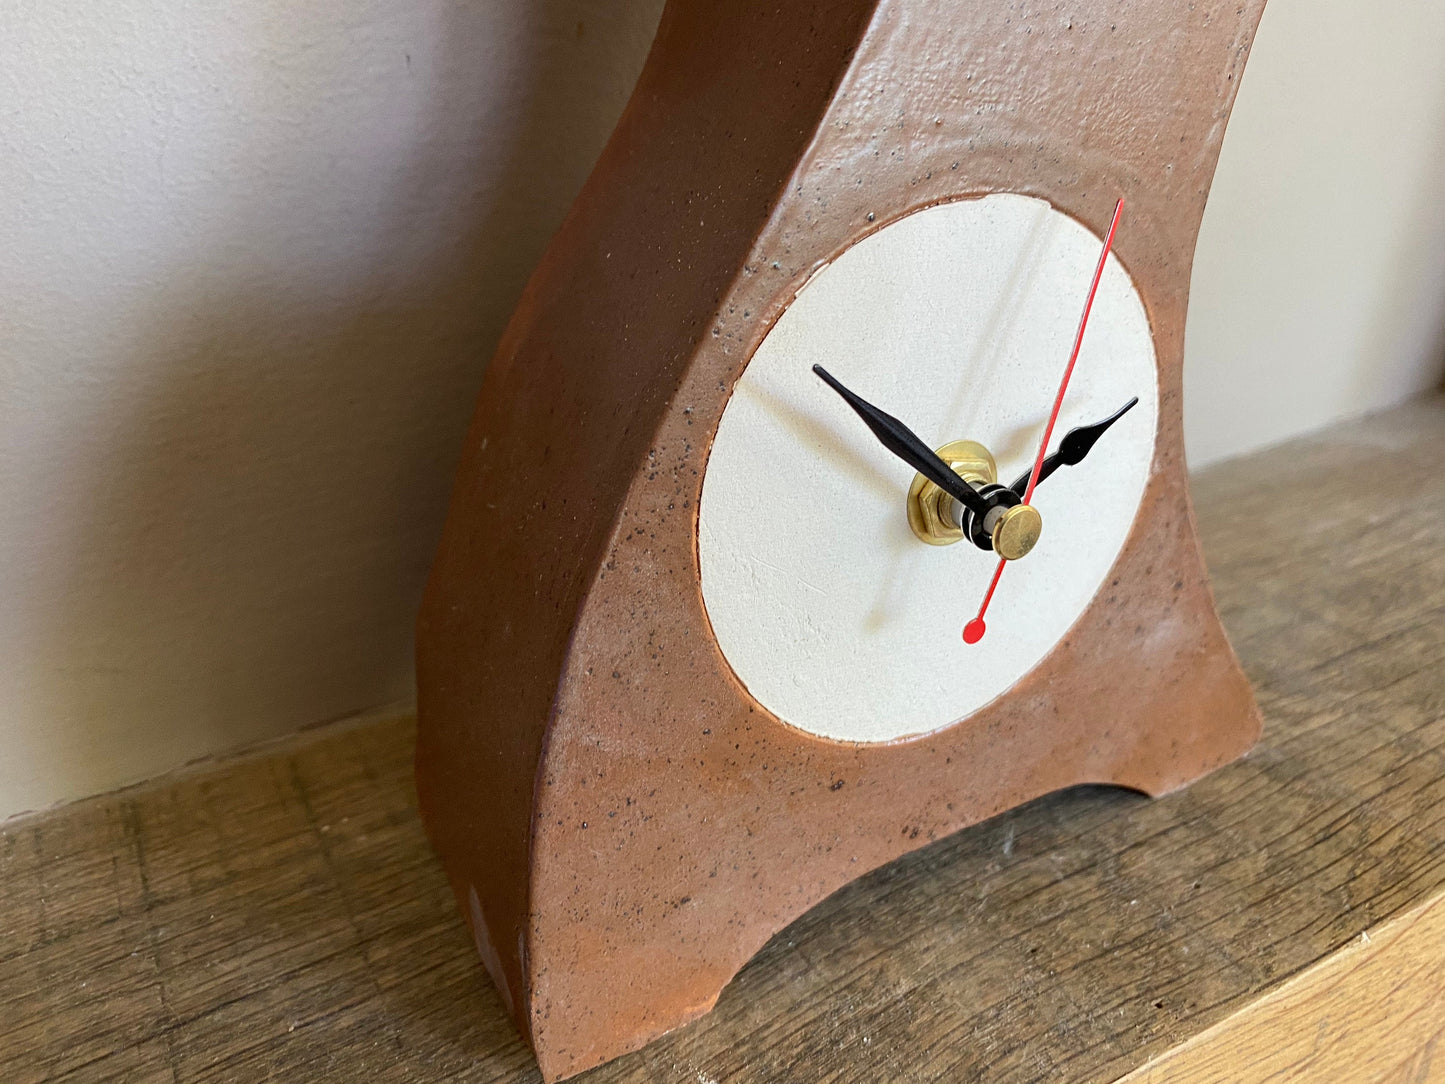 Clocks, Mantel Clock, Handmade Pottery Clock, Mantel Clock, desktop clock, Bedside Table clock, Retro Decor Clock - PeterBowenArt